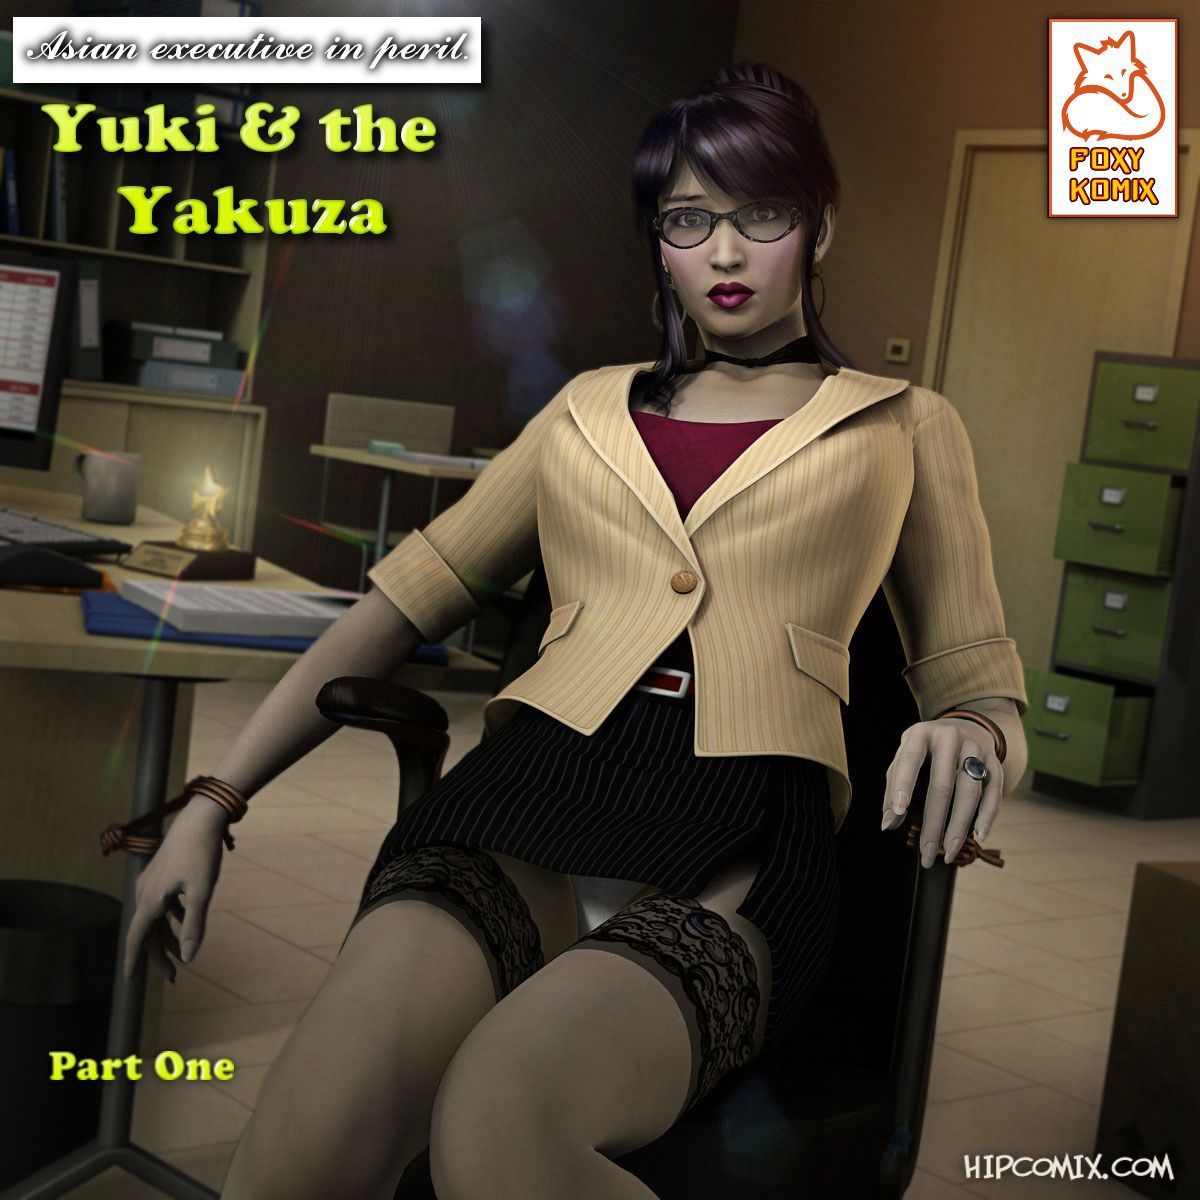 [foxy komix] Yuki y el yakuza 1 2